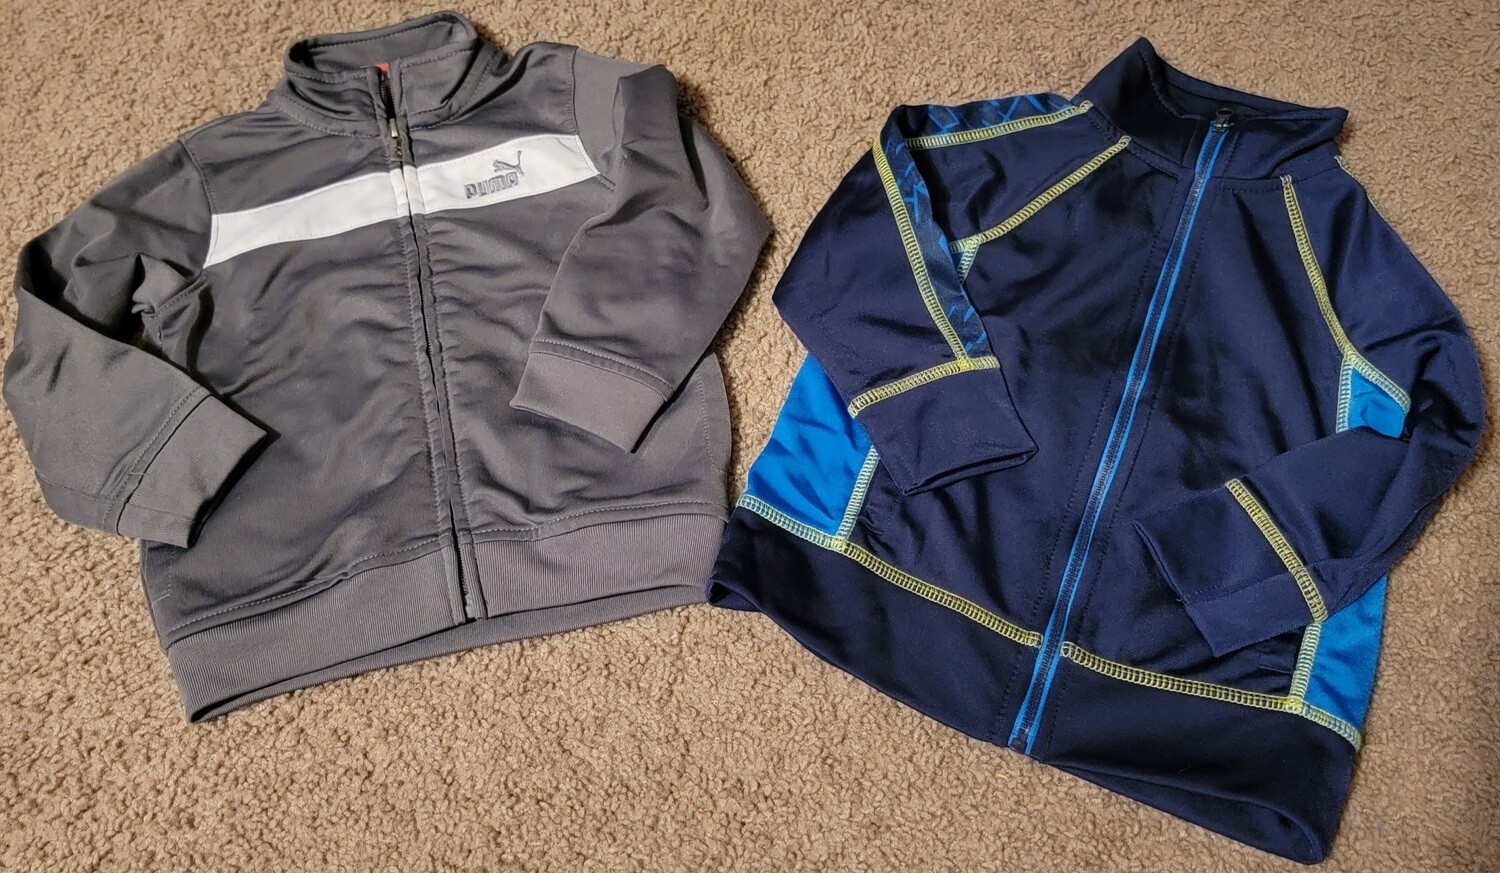 2 jackets